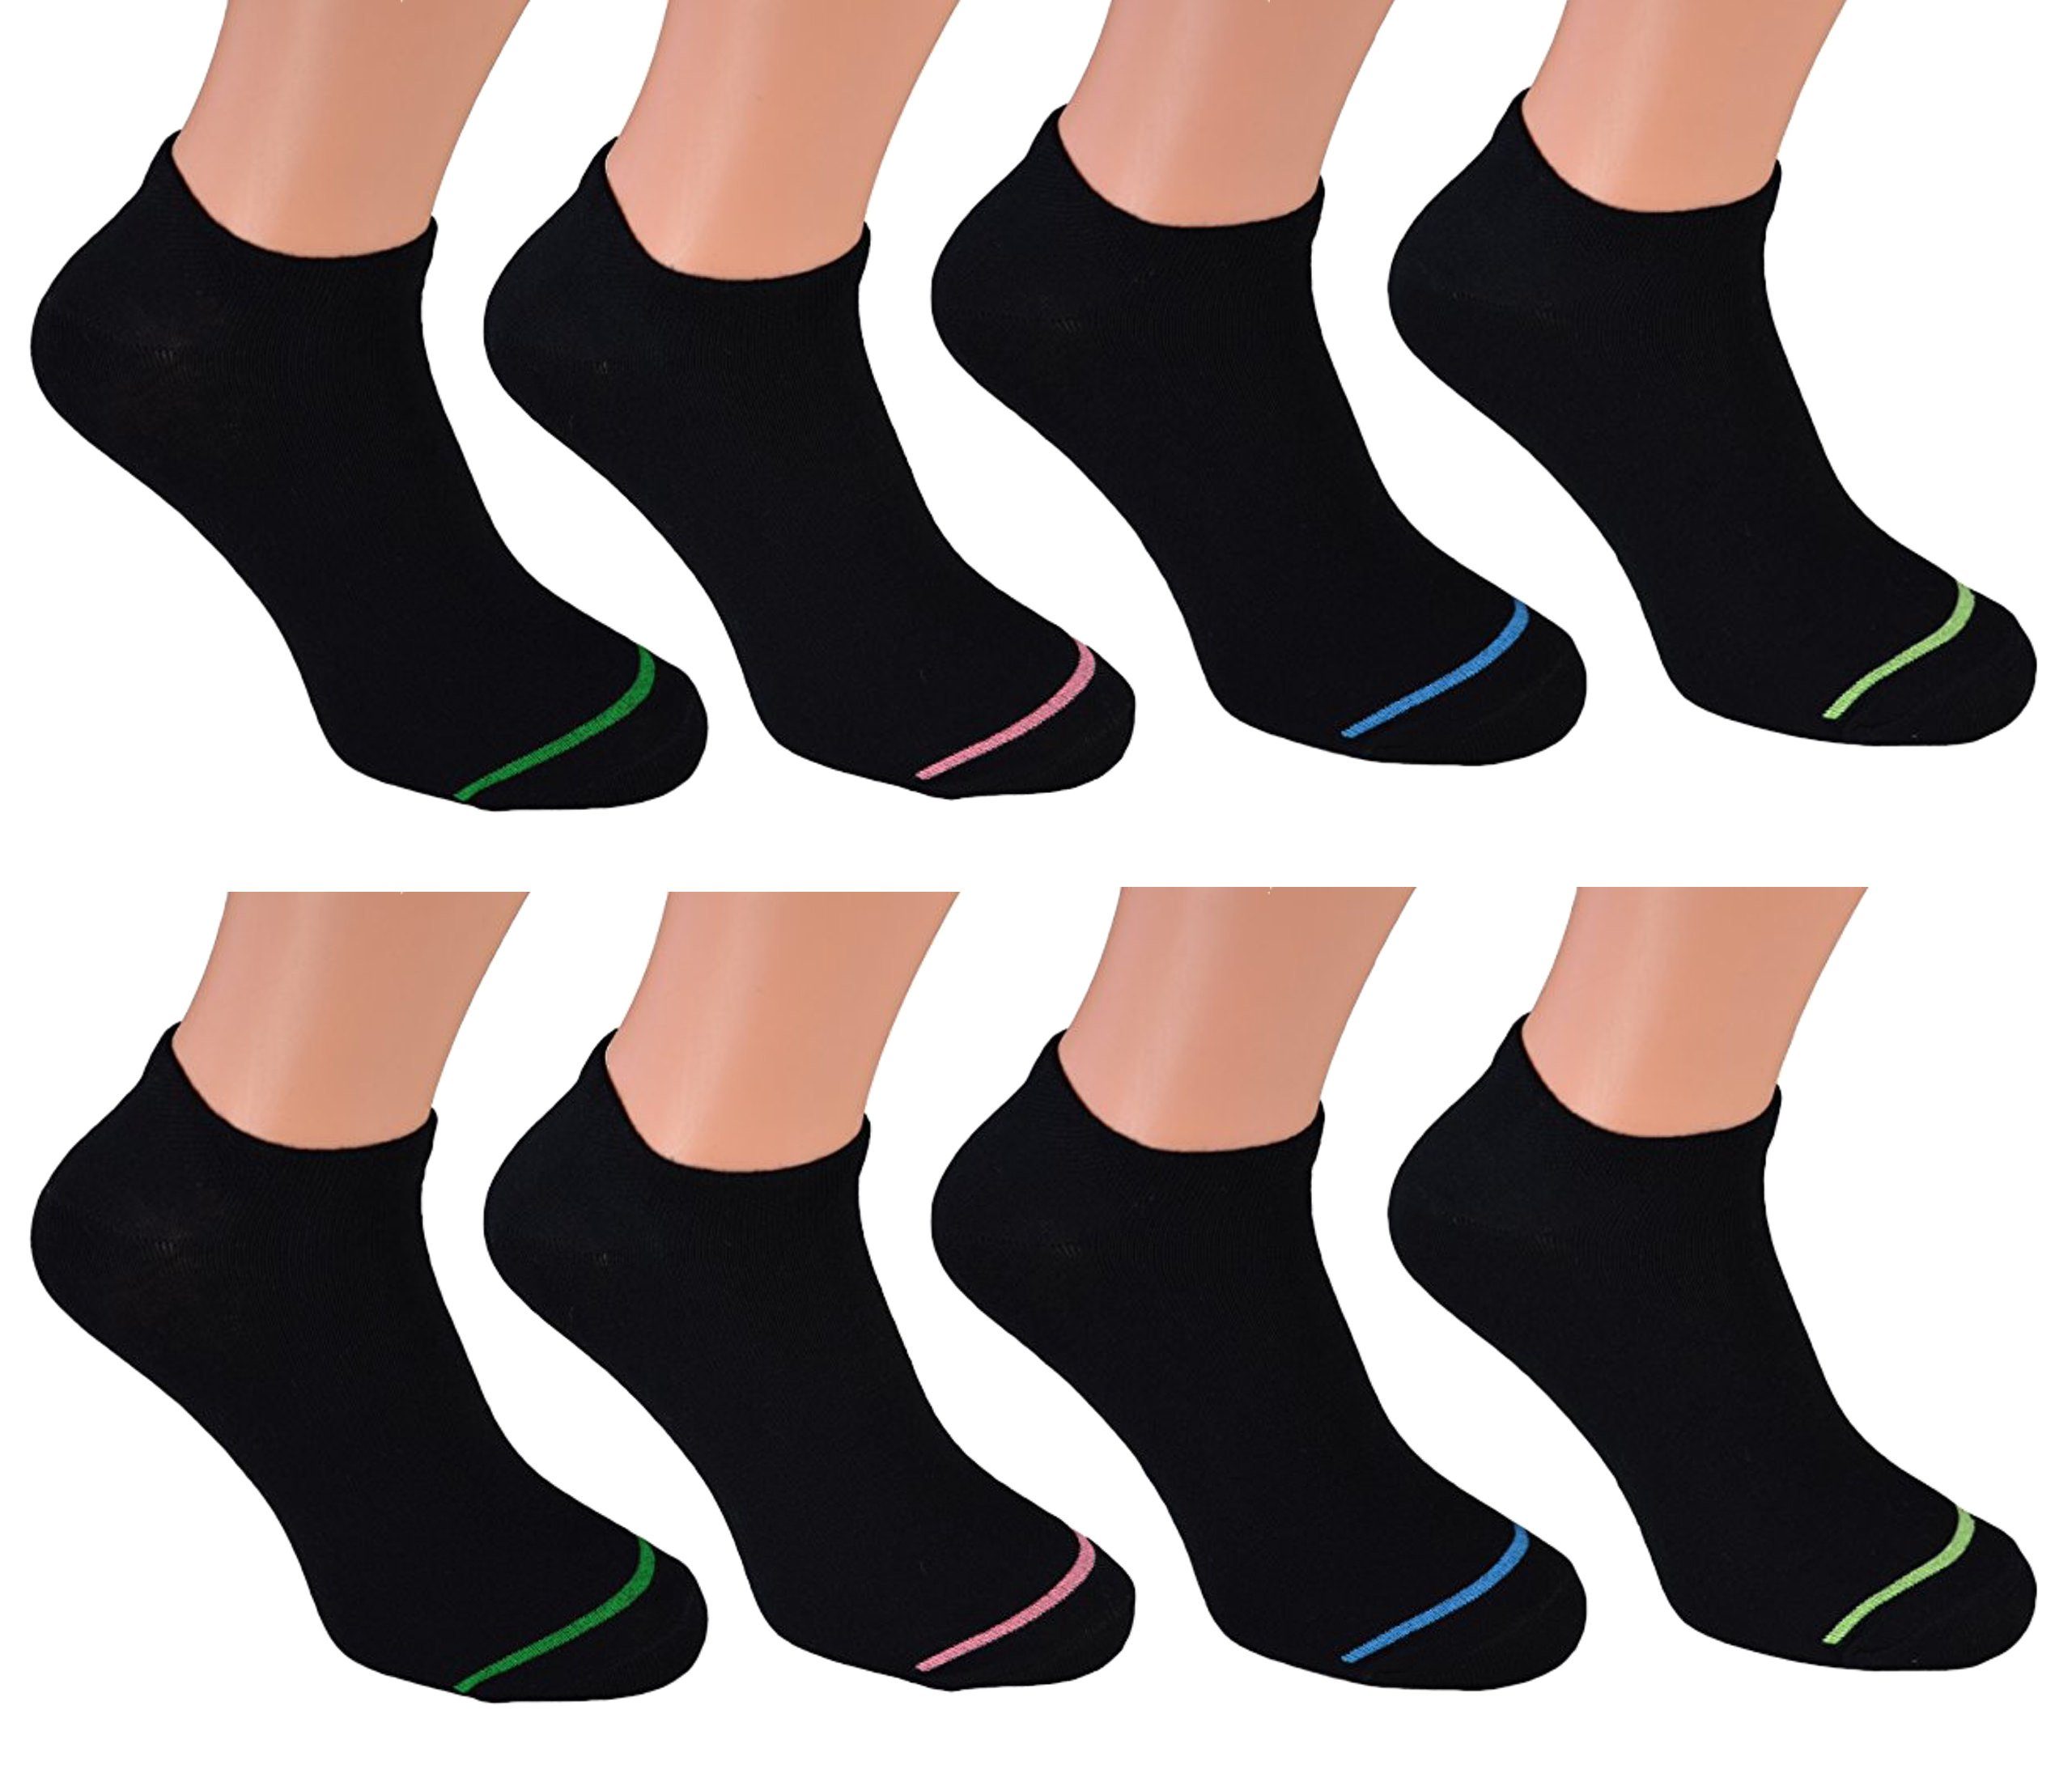 Cocain underwear für Füsslinge Baumwolle Söckchen schwarz Sneaker Sneakersocken - Herren Paar mit Neon (8-Paar) 8 Socken Modelle verschiedene Streifen